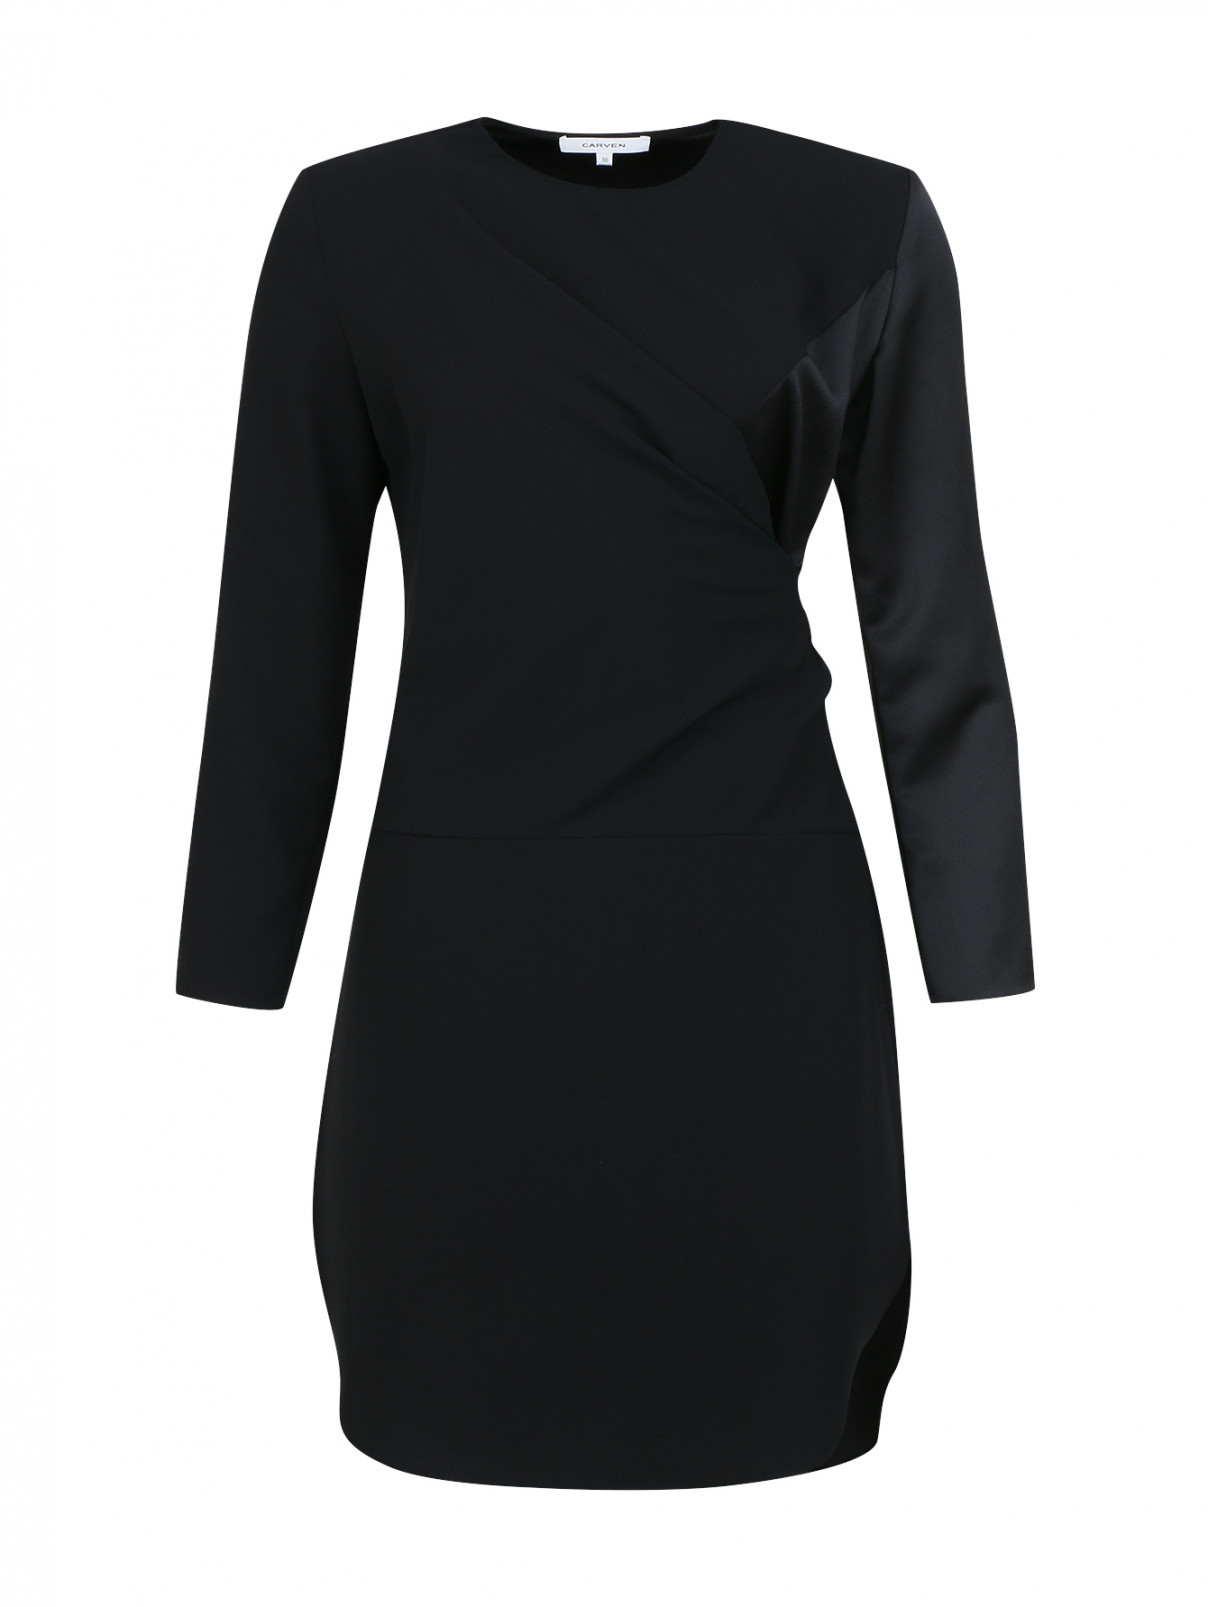 Мини-платье с длинными рукавами Carven  –  Общий вид  – Цвет:  Черный